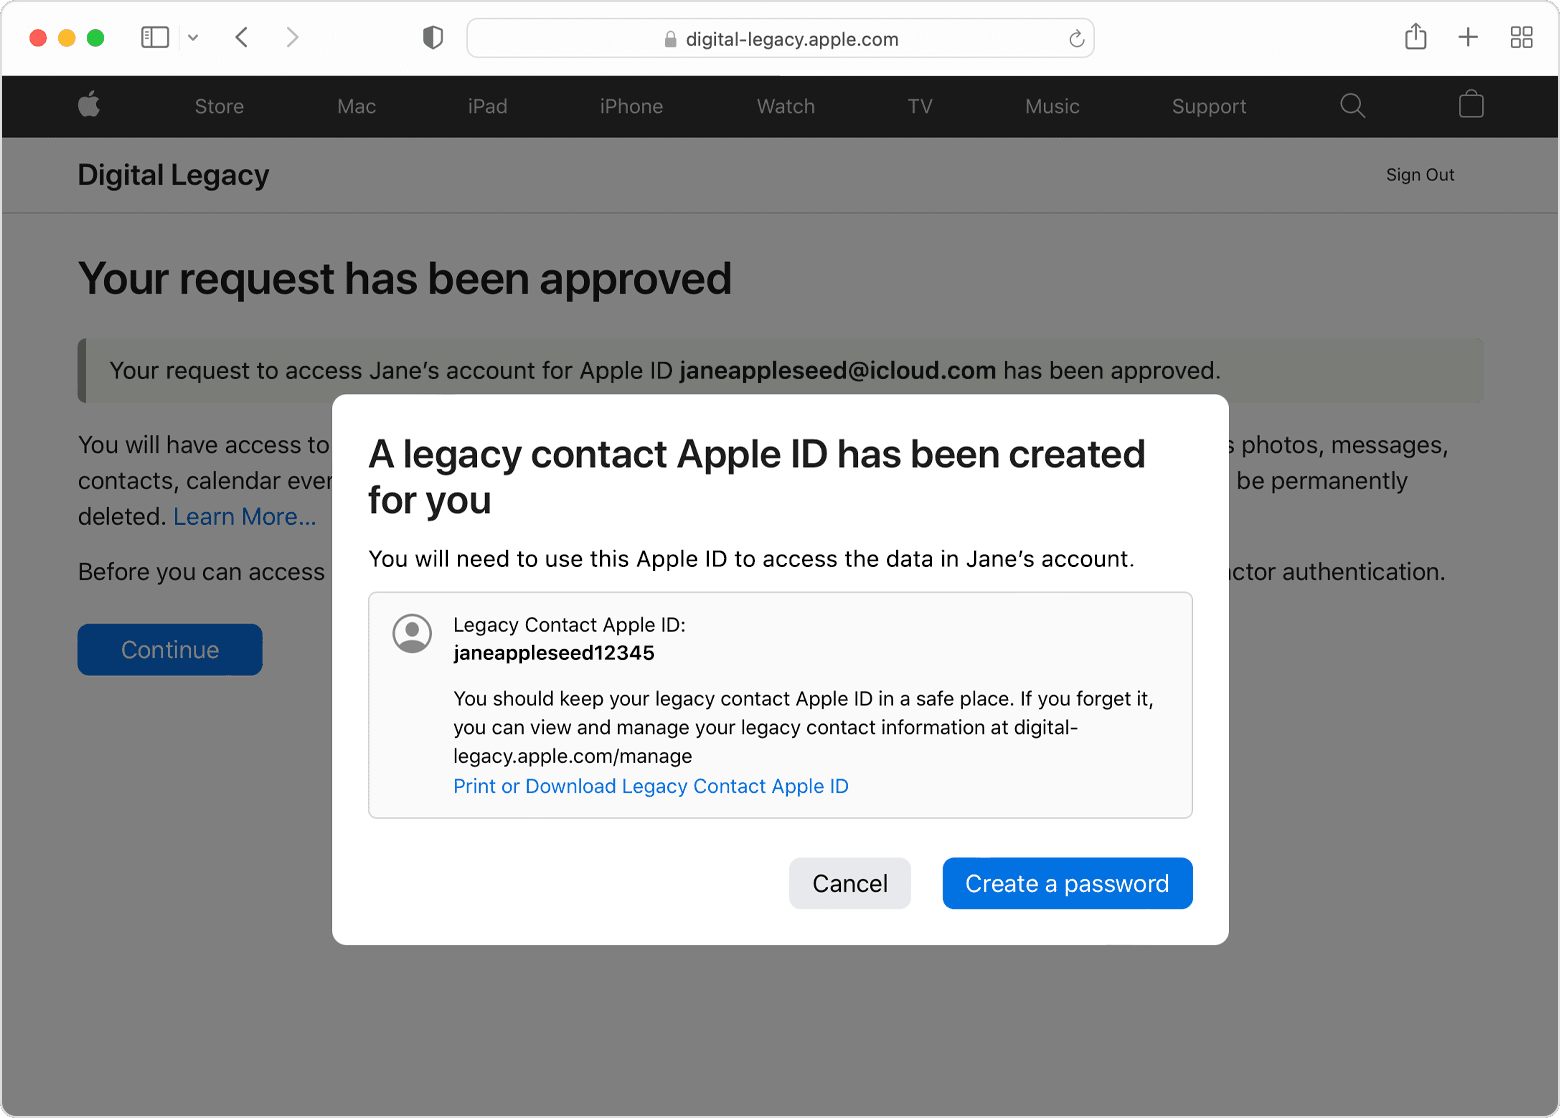 Nadat je erfeniscontactaanvraag is goedgekeurd, krijg je een bericht dat er een Apple ID voor erfeniscontacten voor je is aangemaakt. Je kunt deze Apple ID voor erfeniscontacten afdrukken of downloaden, of je kunt tikken op de blauwe knop 'Maak een wachtwoord aan'.